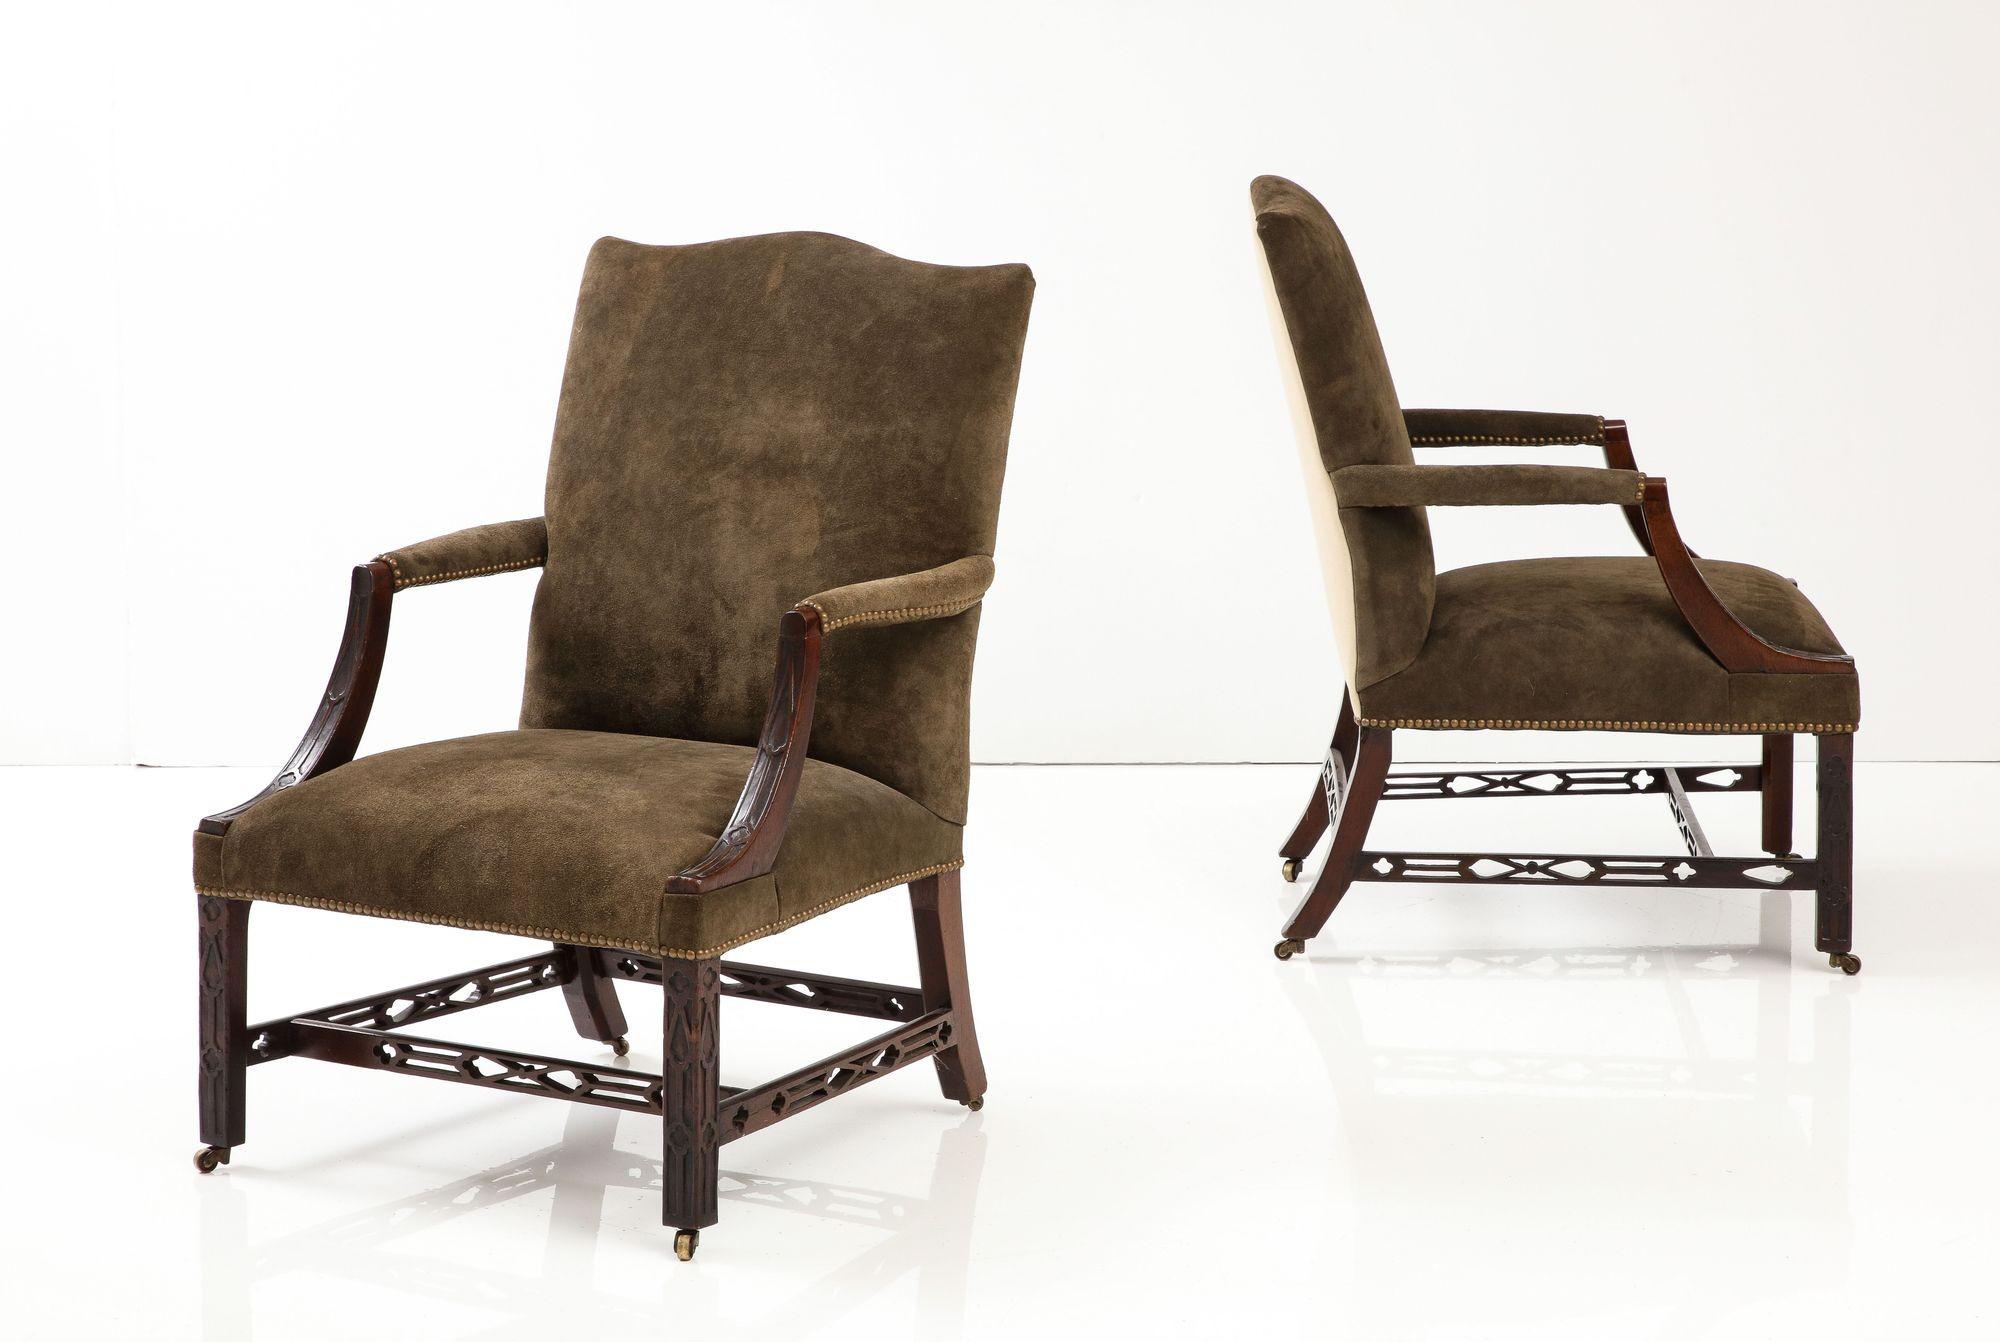 Fin du XVIIIe siècle Paire assortie de chaises George III Gainsborough en vente